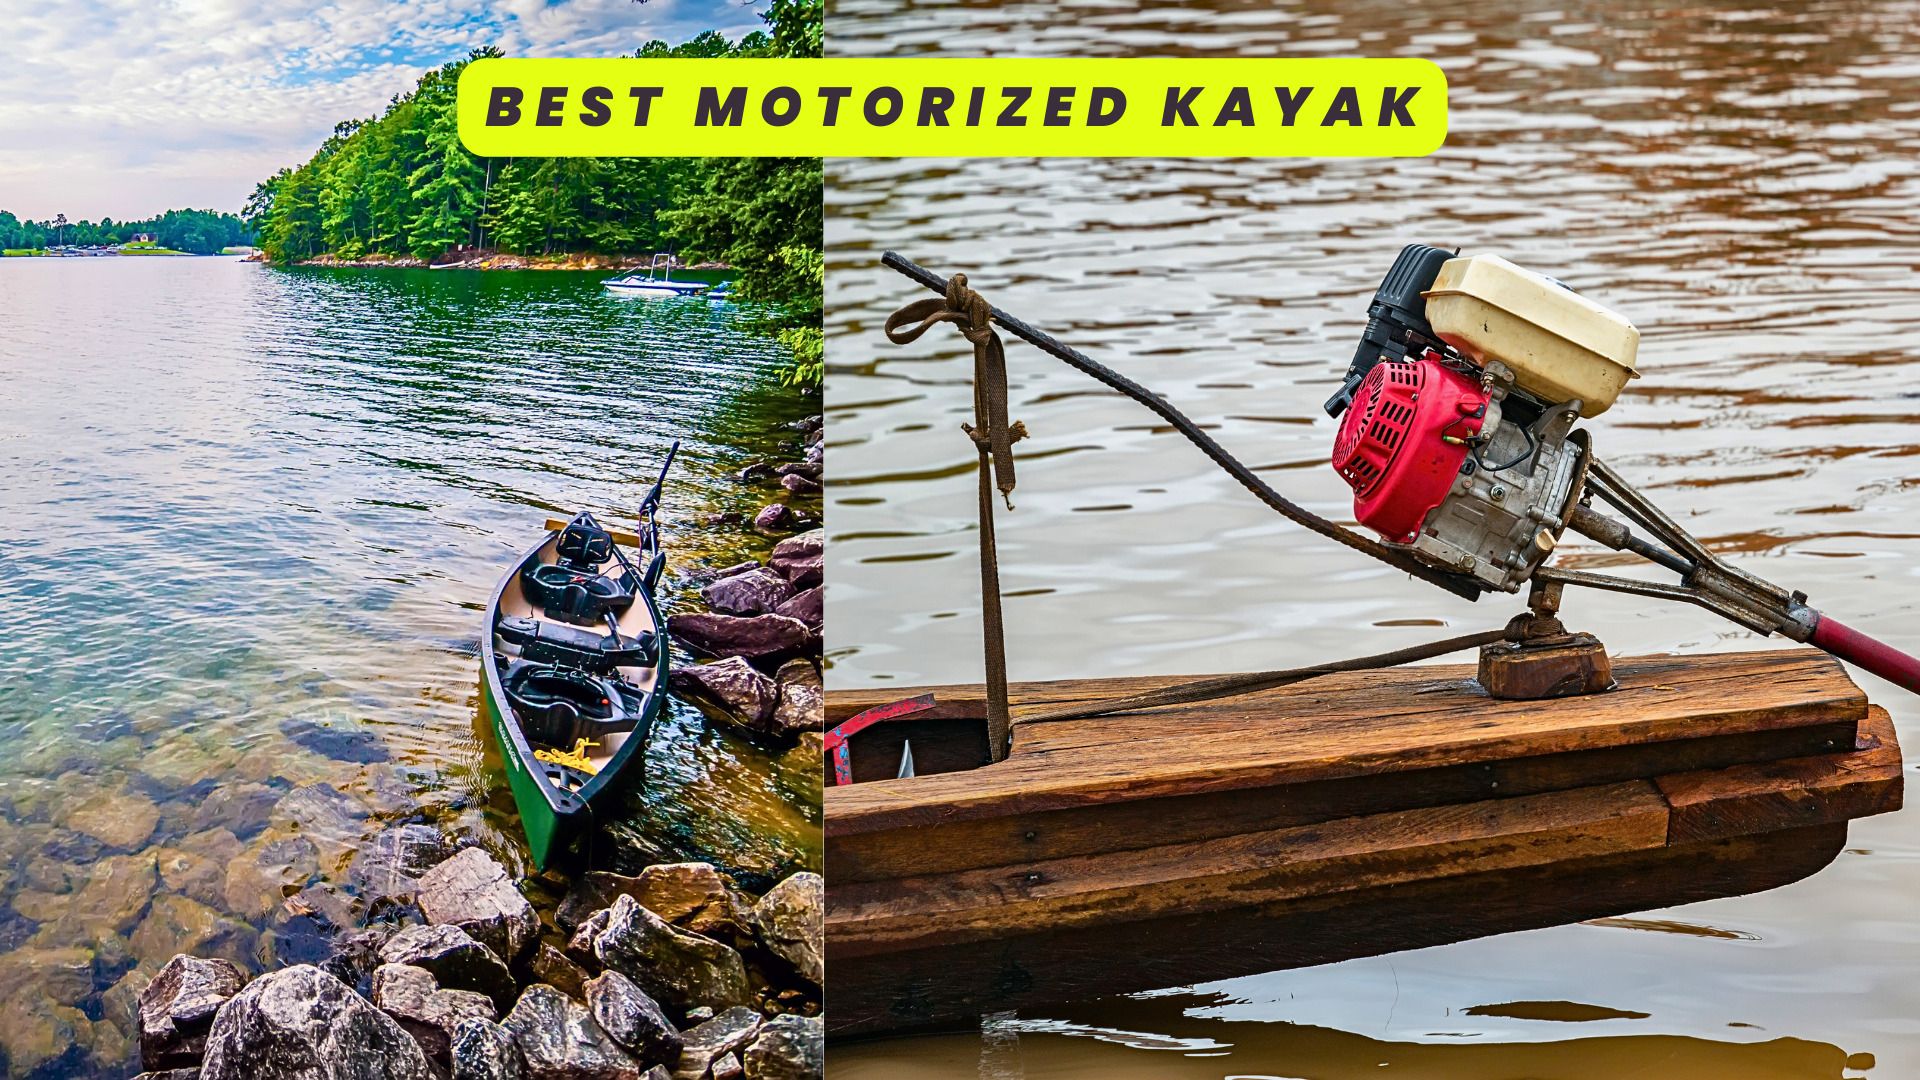 Motorized Kayaks